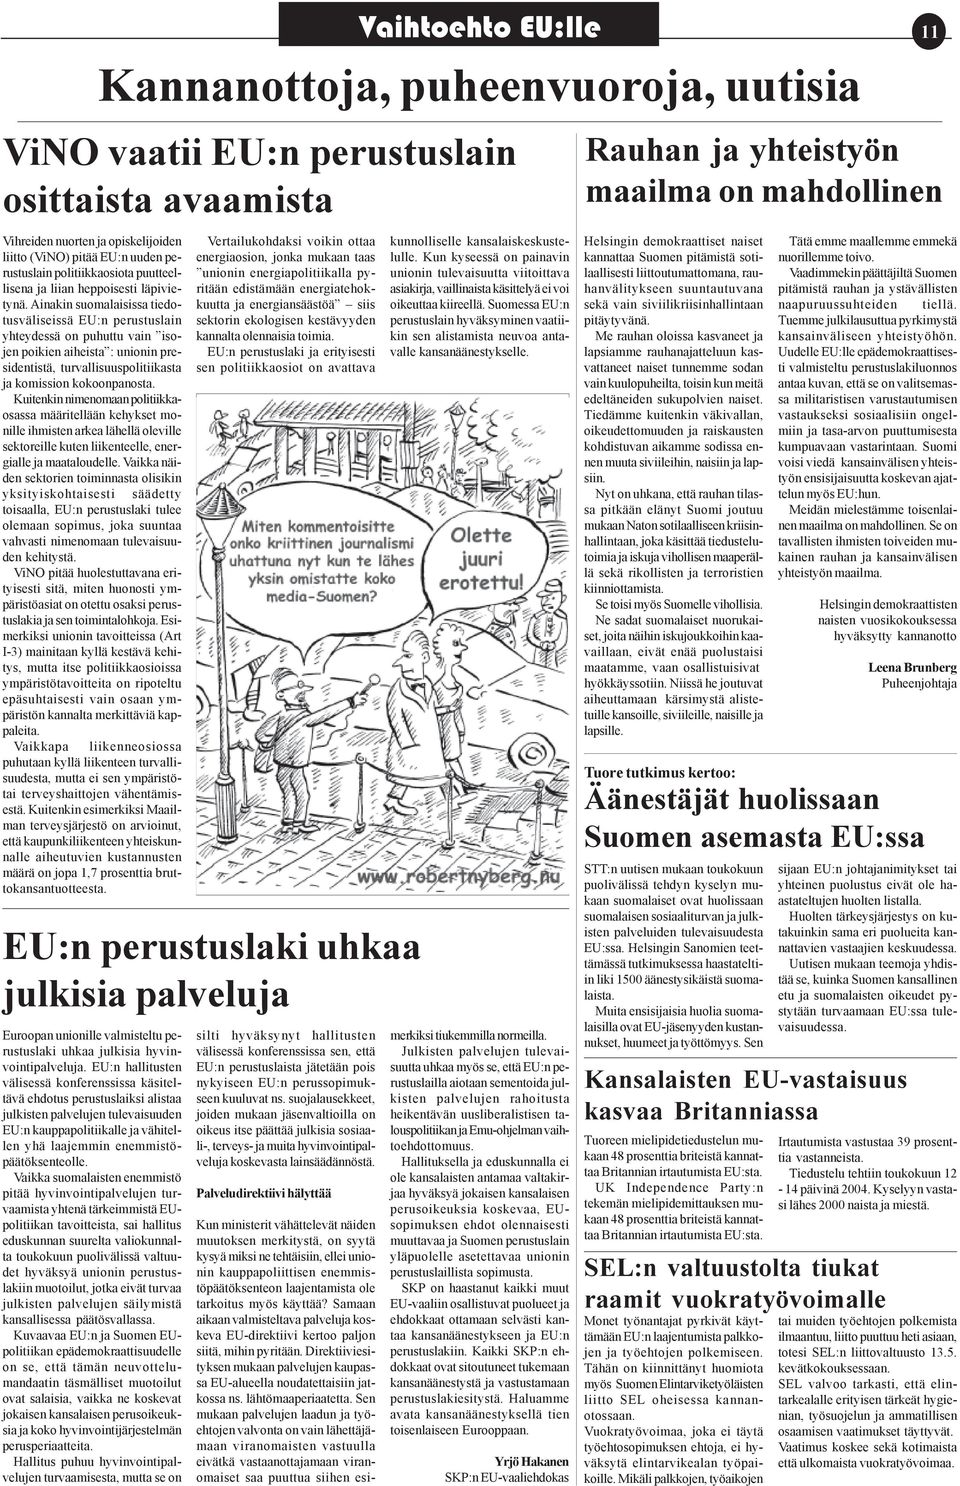 Vaikka suomalaisten enemmistö pitää hyvinvointipalvelujen turvaamista yhtenä tärkeimmistä EUpolitiikan tavoitteista, sai hallitus eduskunnan suurelta valiokunnalta toukokuun puolivälissä valtuudet